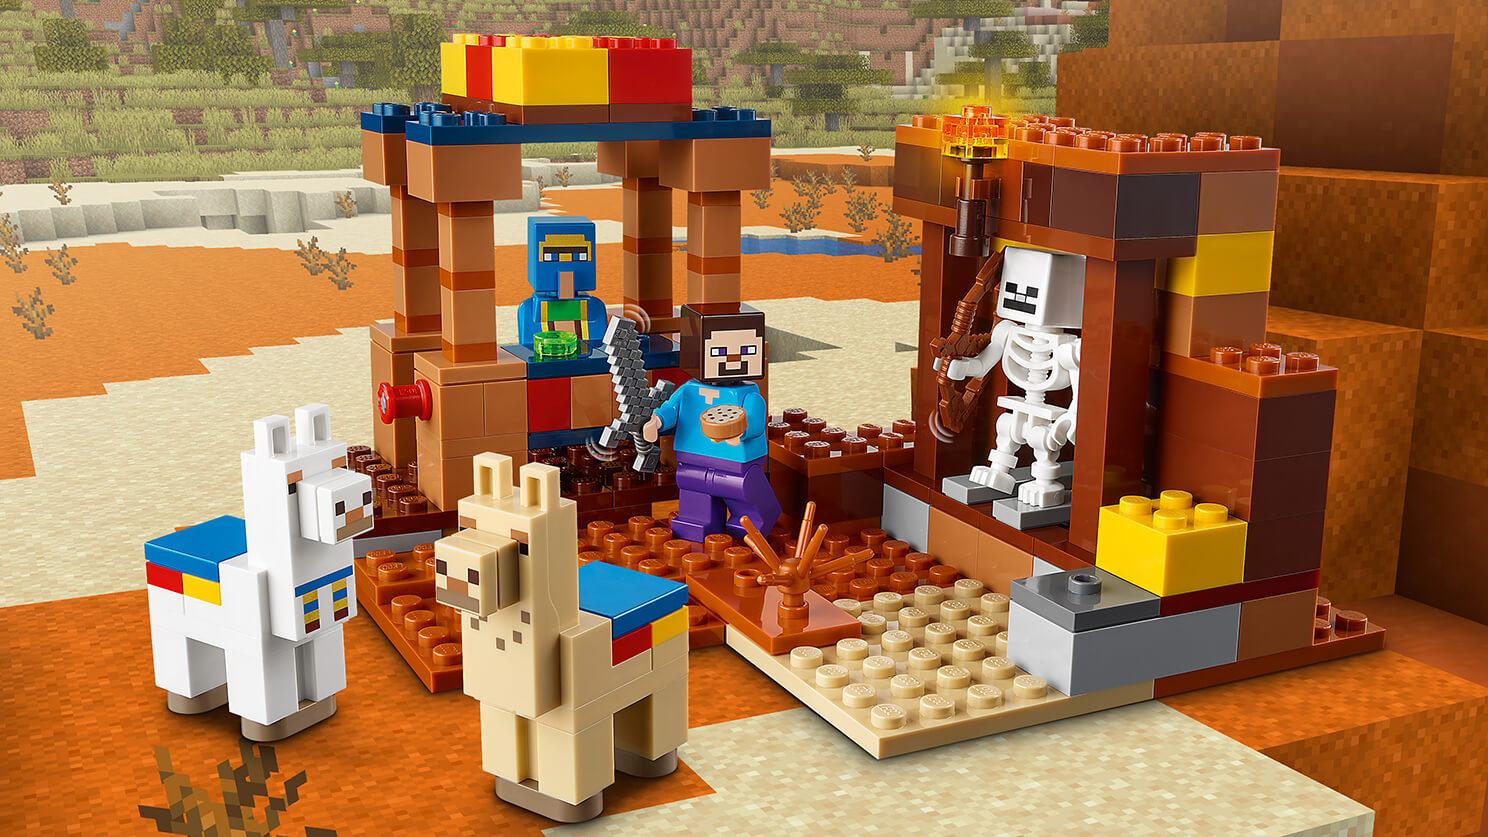 村人の交易所 21167 - レゴ®マインクラフト セット - LEGO.comキッズ